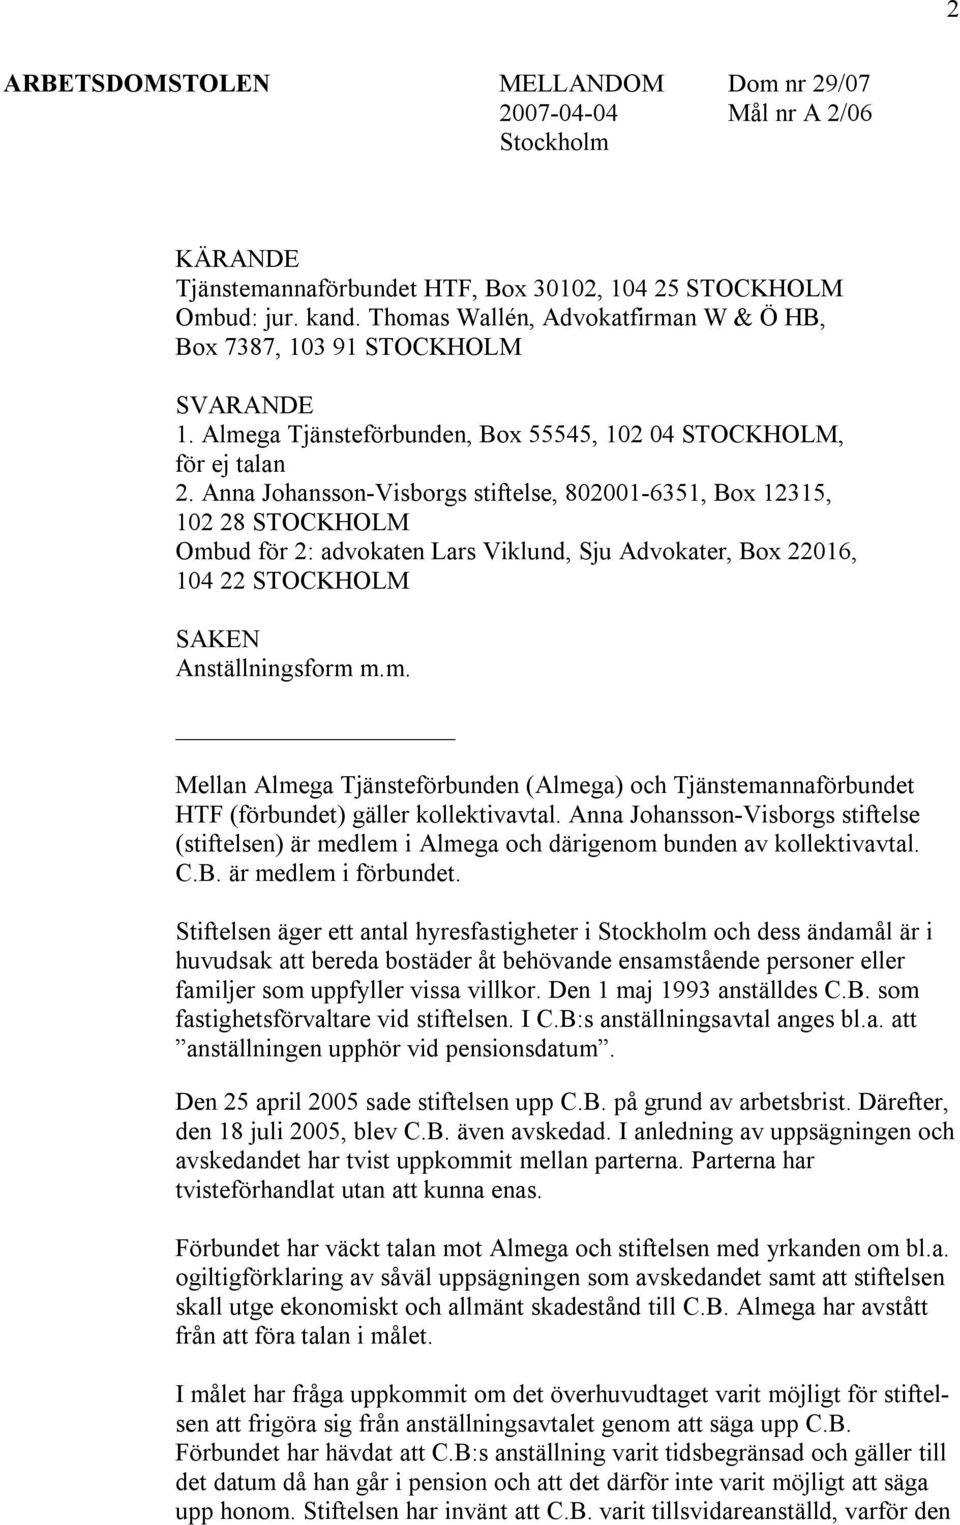 Anna Johansson-Visborgs stiftelse, 802001-6351, Box 12315, 102 28 STOCKHOLM Ombud för 2: advokaten Lars Viklund, Sju Advokater, Box 22016, 104 22 STOCKHOLM SAKEN Anställningsform m.m. Mellan Almega Tjänsteförbunden (Almega) och Tjänstemannaförbundet HTF (förbundet) gäller kollektivavtal.